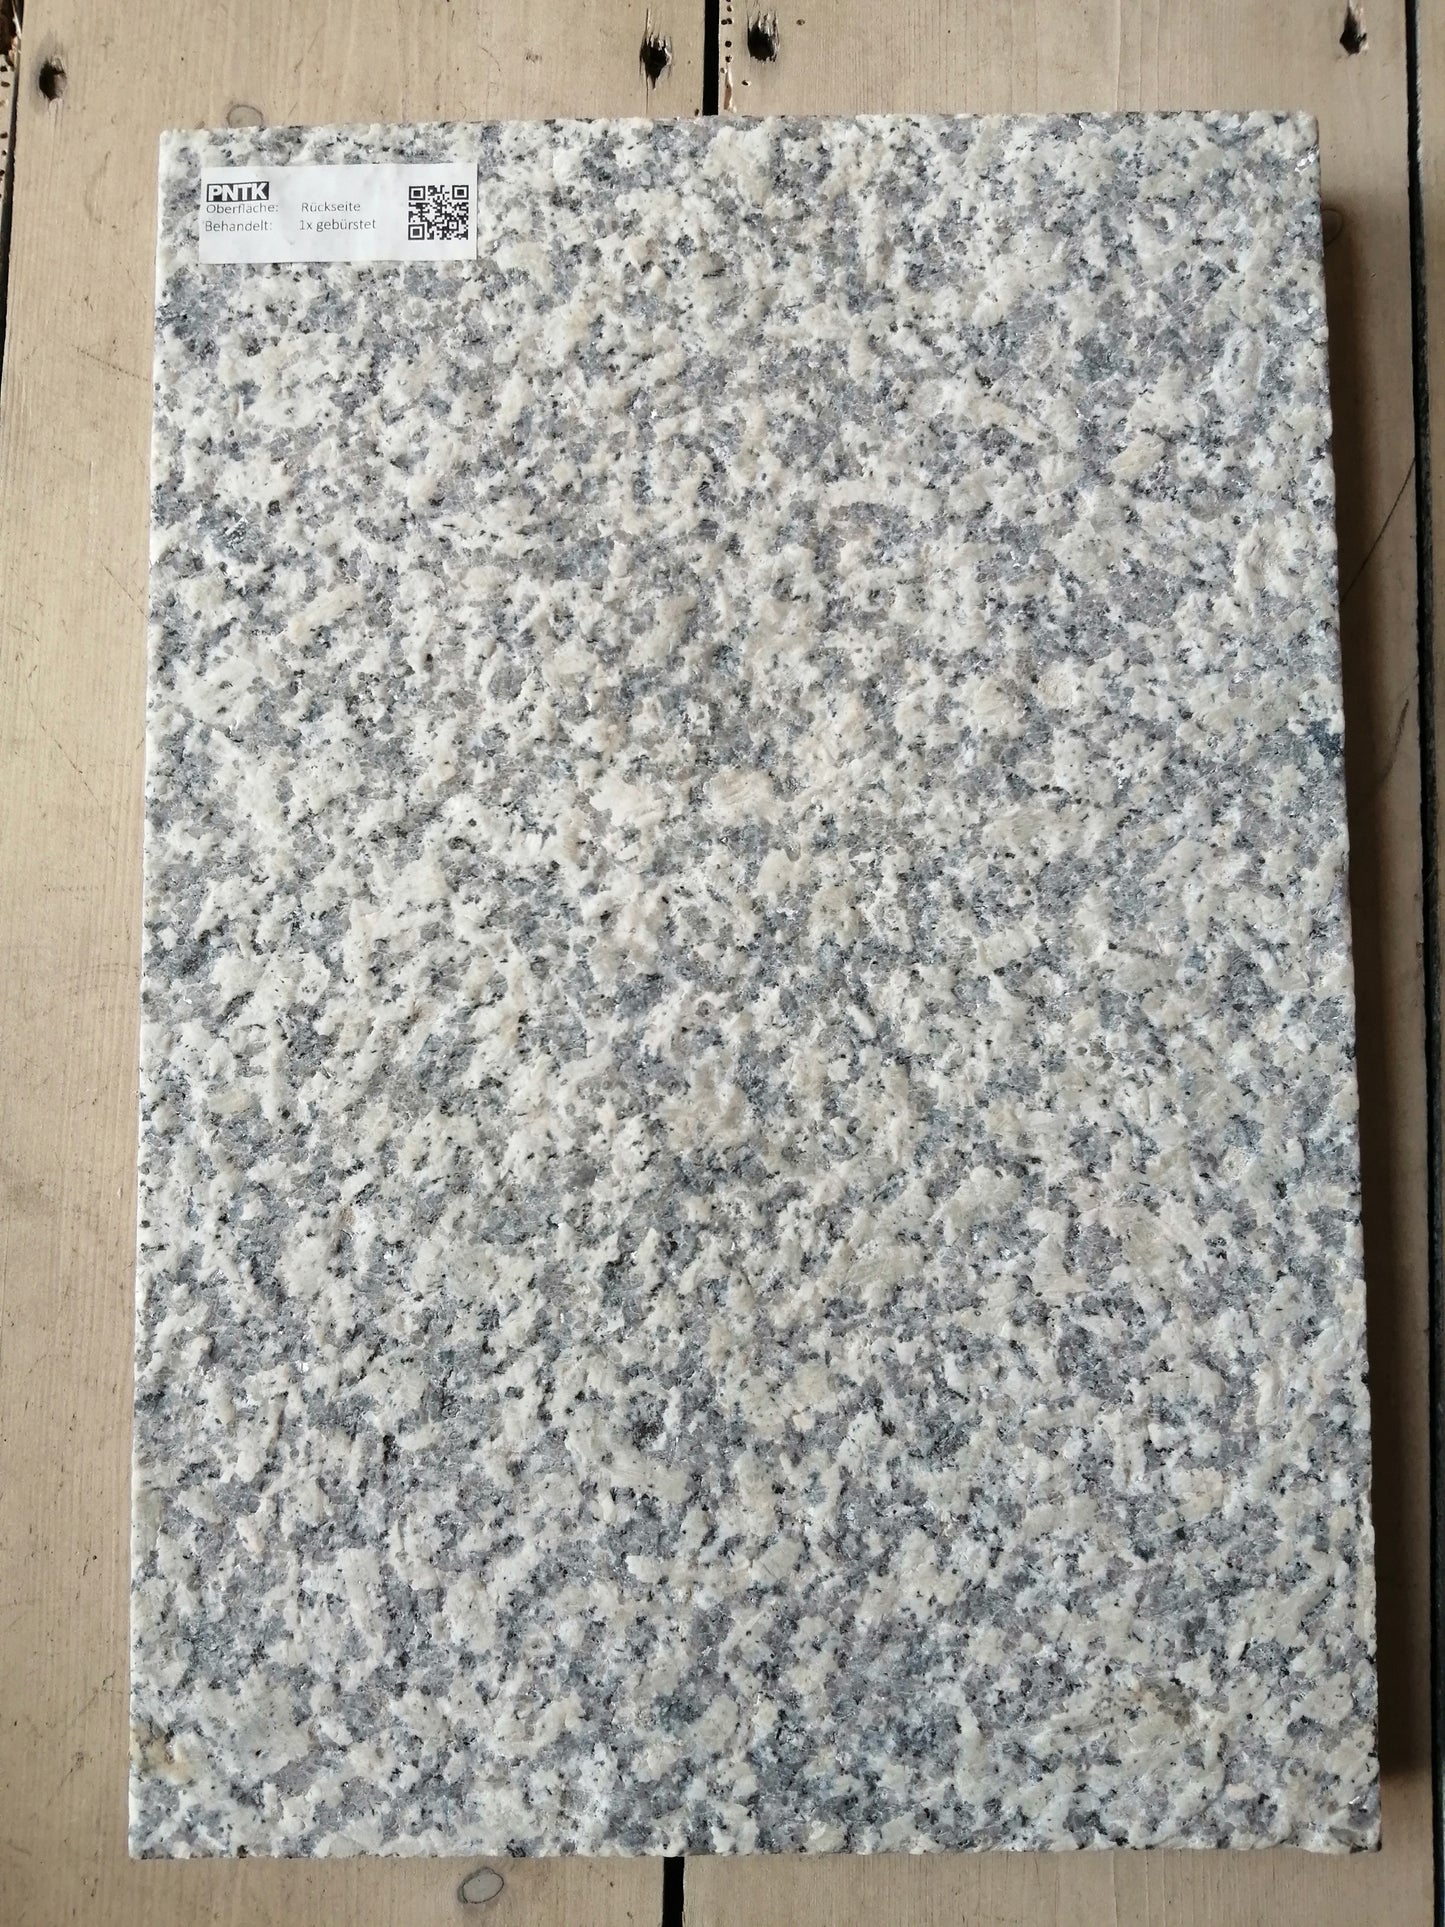 Granitstein Bianco Sardo Fassadenplatten verschiedene Größen 164 cm Länge